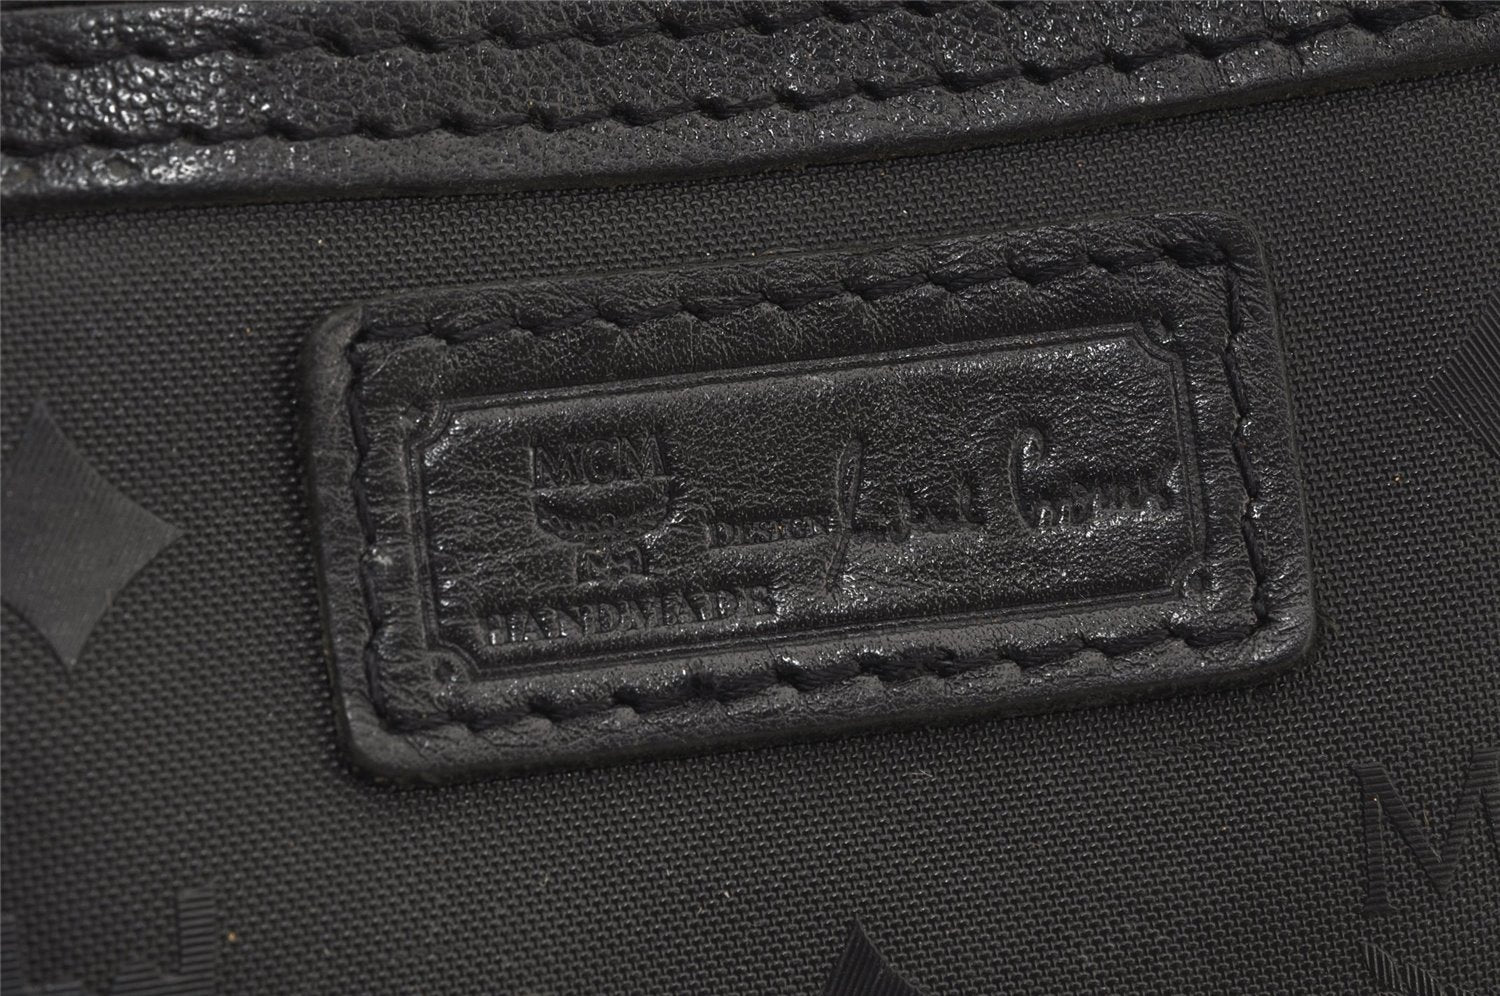 Authentic MCM Vintage PVC Leather 2Way Hand Boston Bag Purse Black 6817J